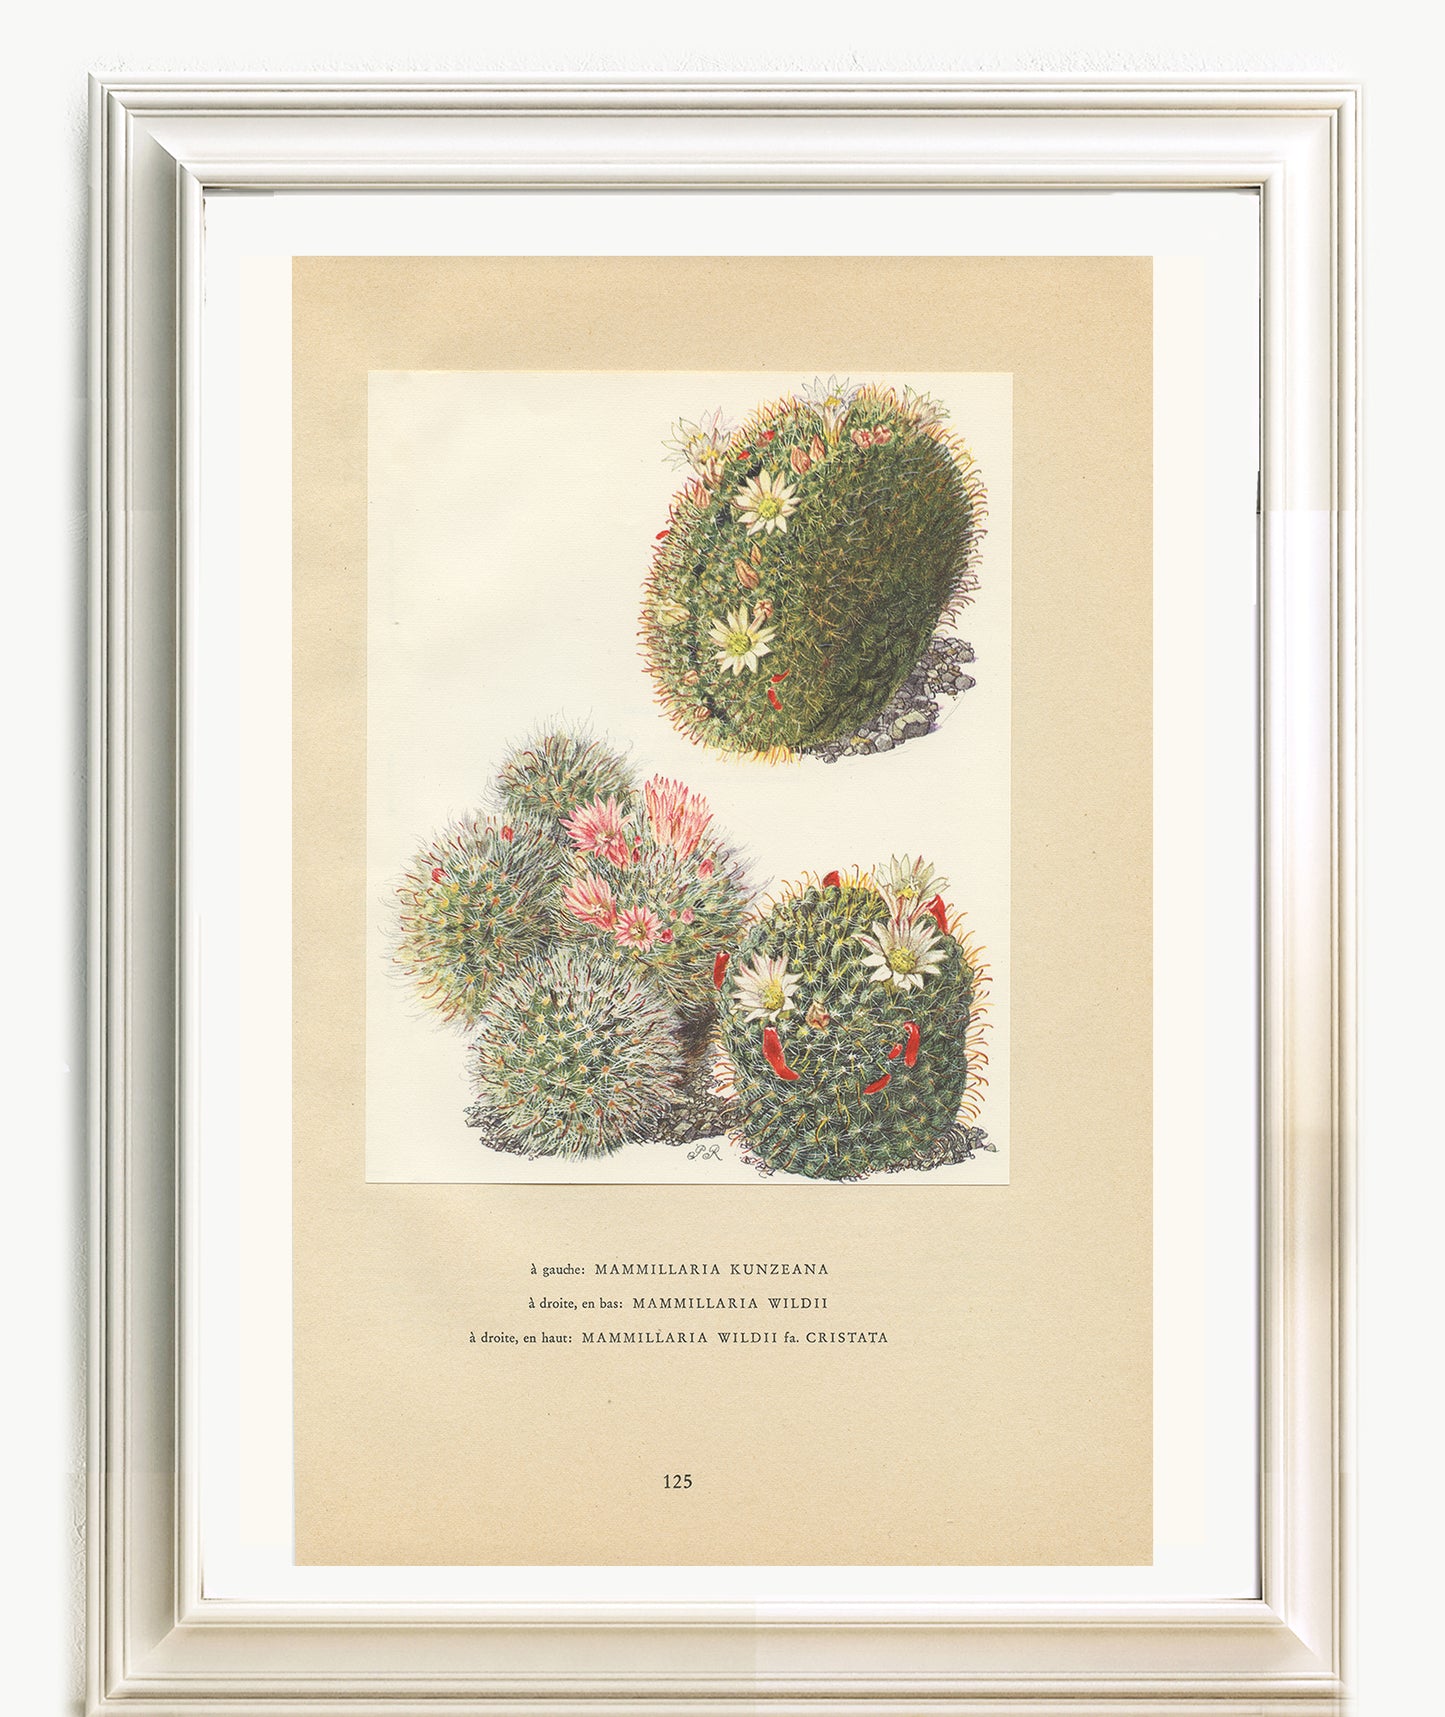 1954 Mammilaria cactus print - Kunzeana & wildii